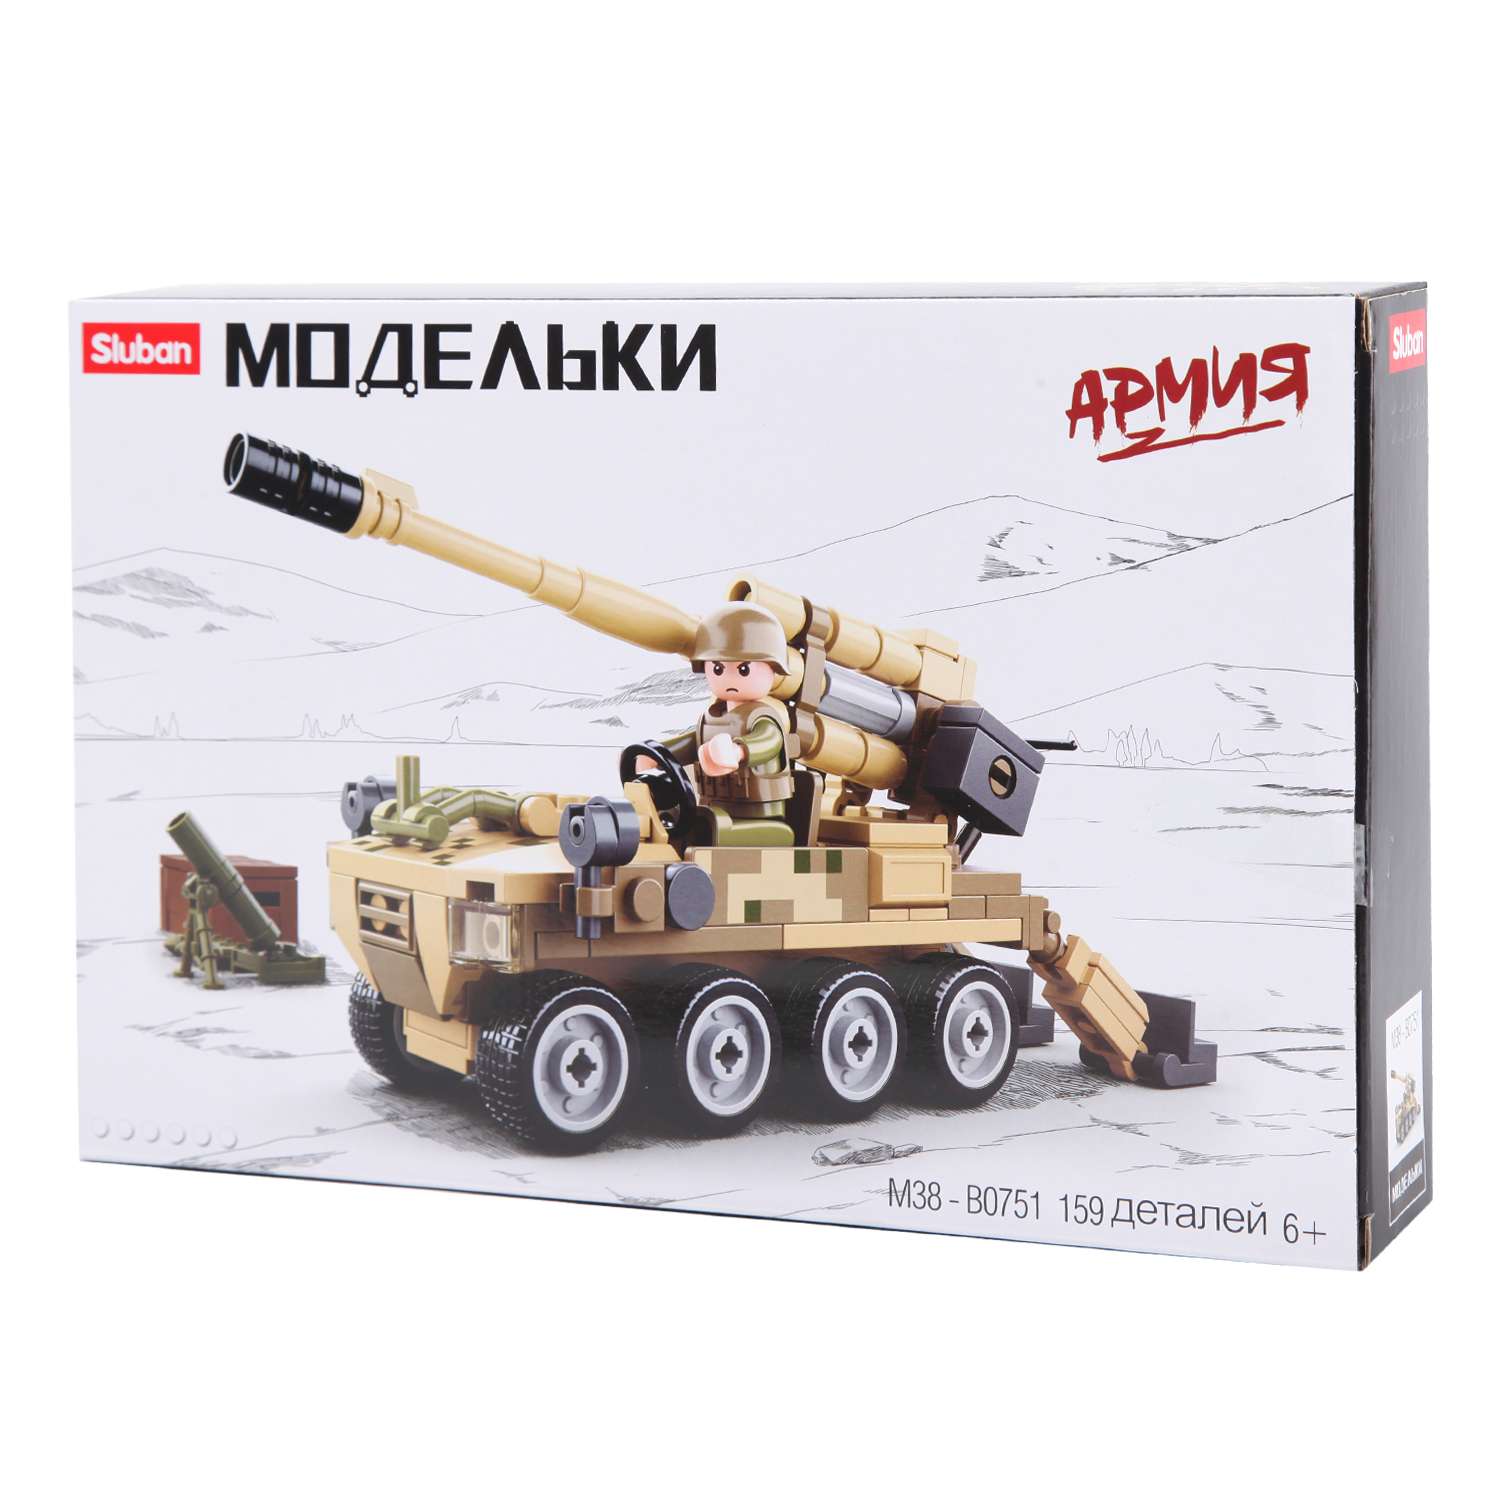 Купить в Минске, Беларуси игрушечные, детские сборные модели военной техники, цена